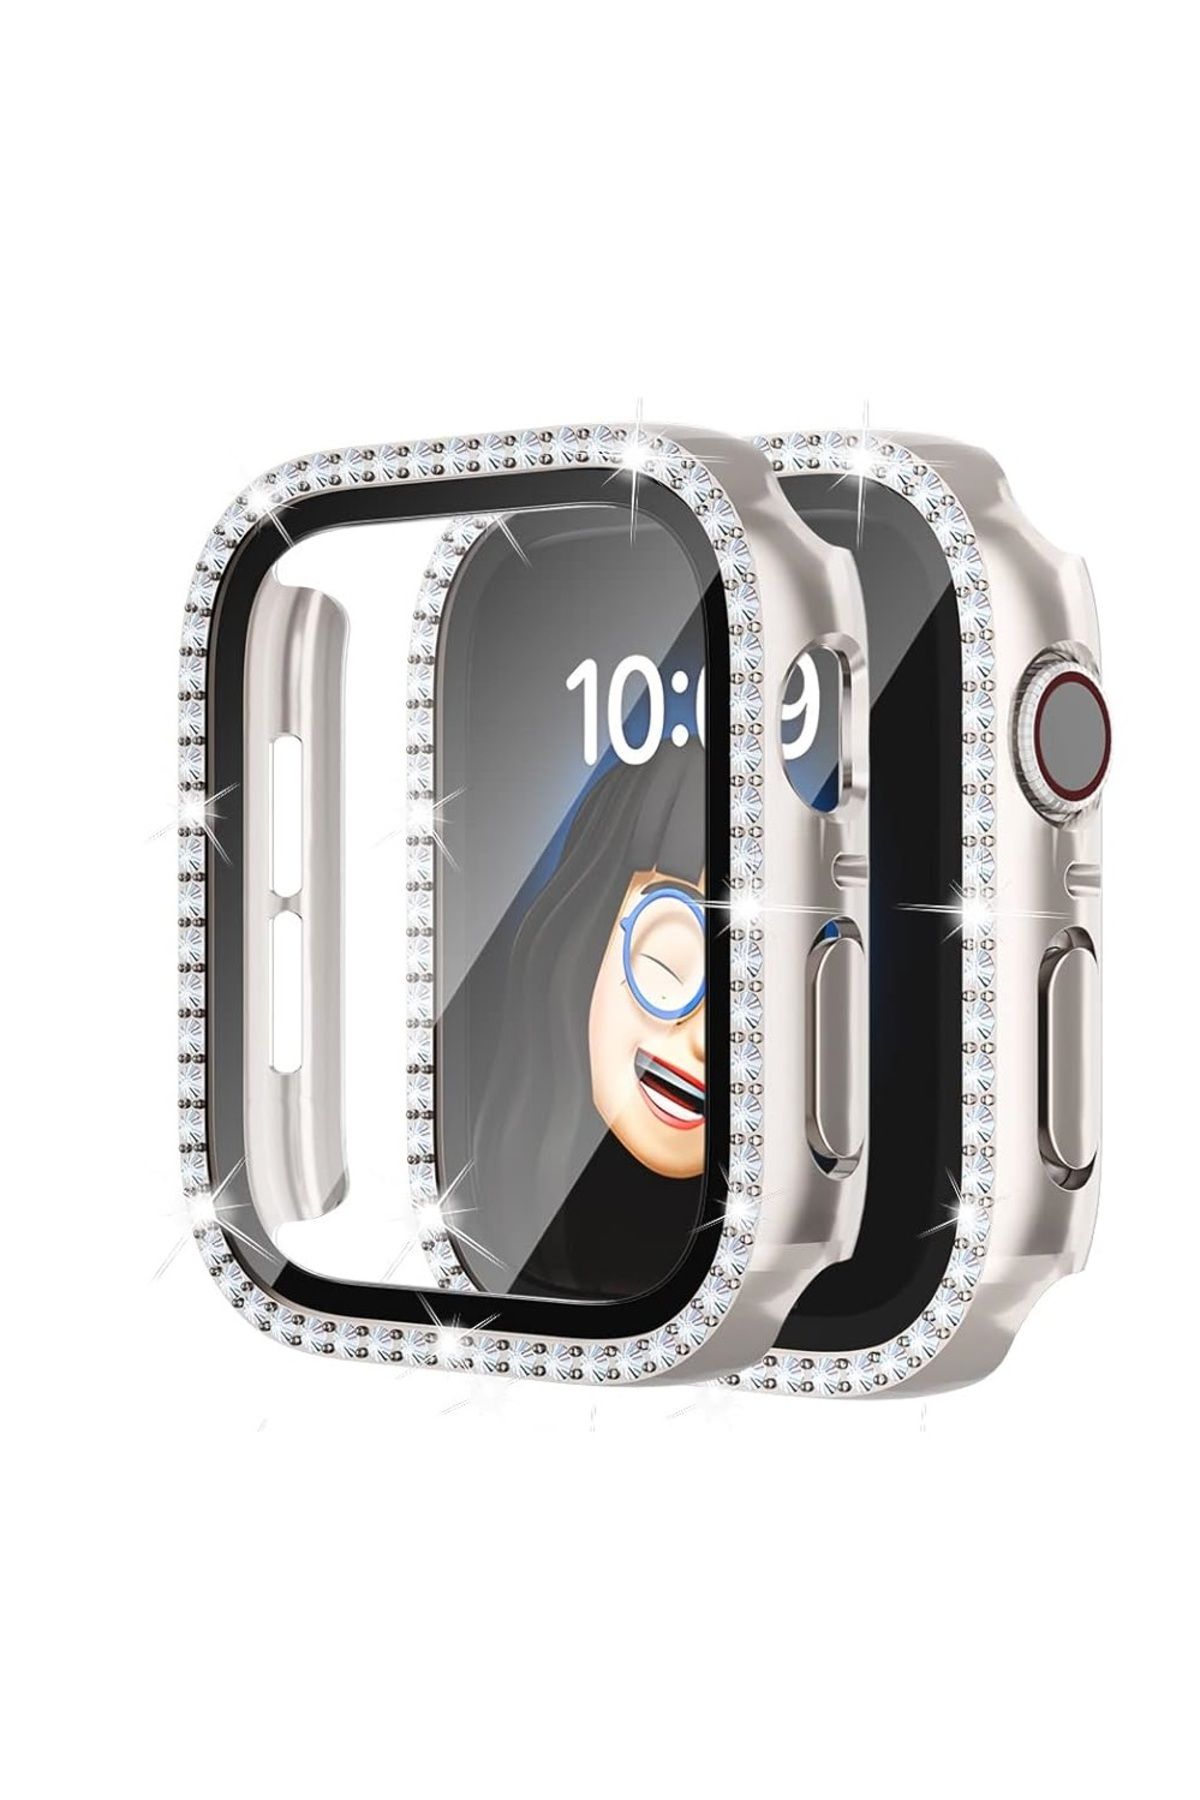 UnDePlus Apple Watch 40mm Ekran Koruyuculu Tek Sıra Kenar Taşlı Sert PC Kasa Koruyucu